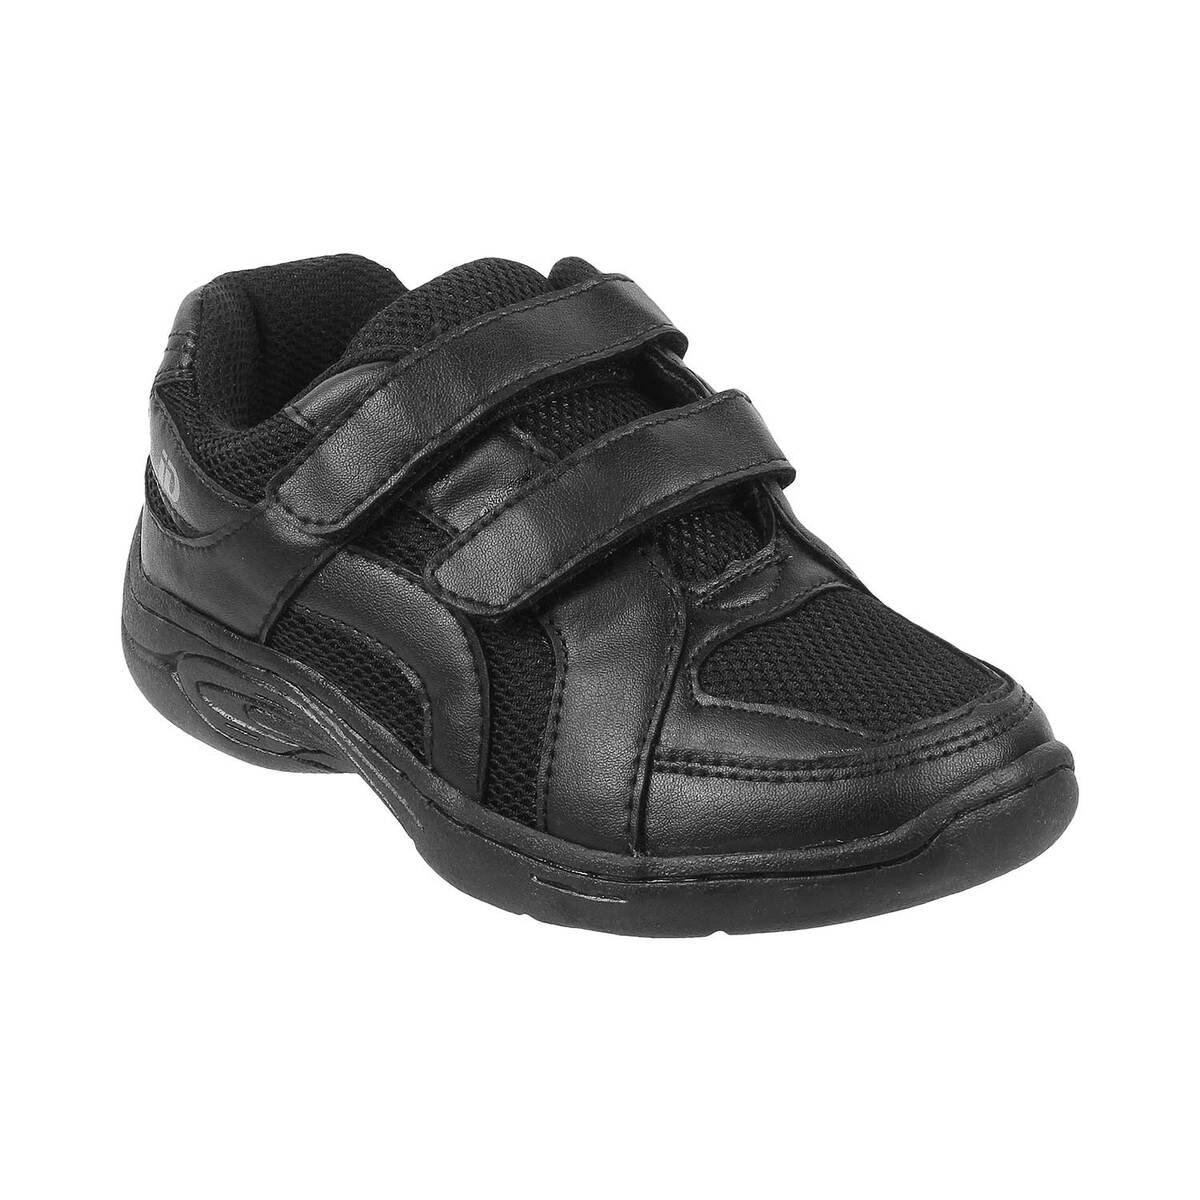 Buy Boys Black Sneakers Online | 52-100-11-25-Metro Shoes